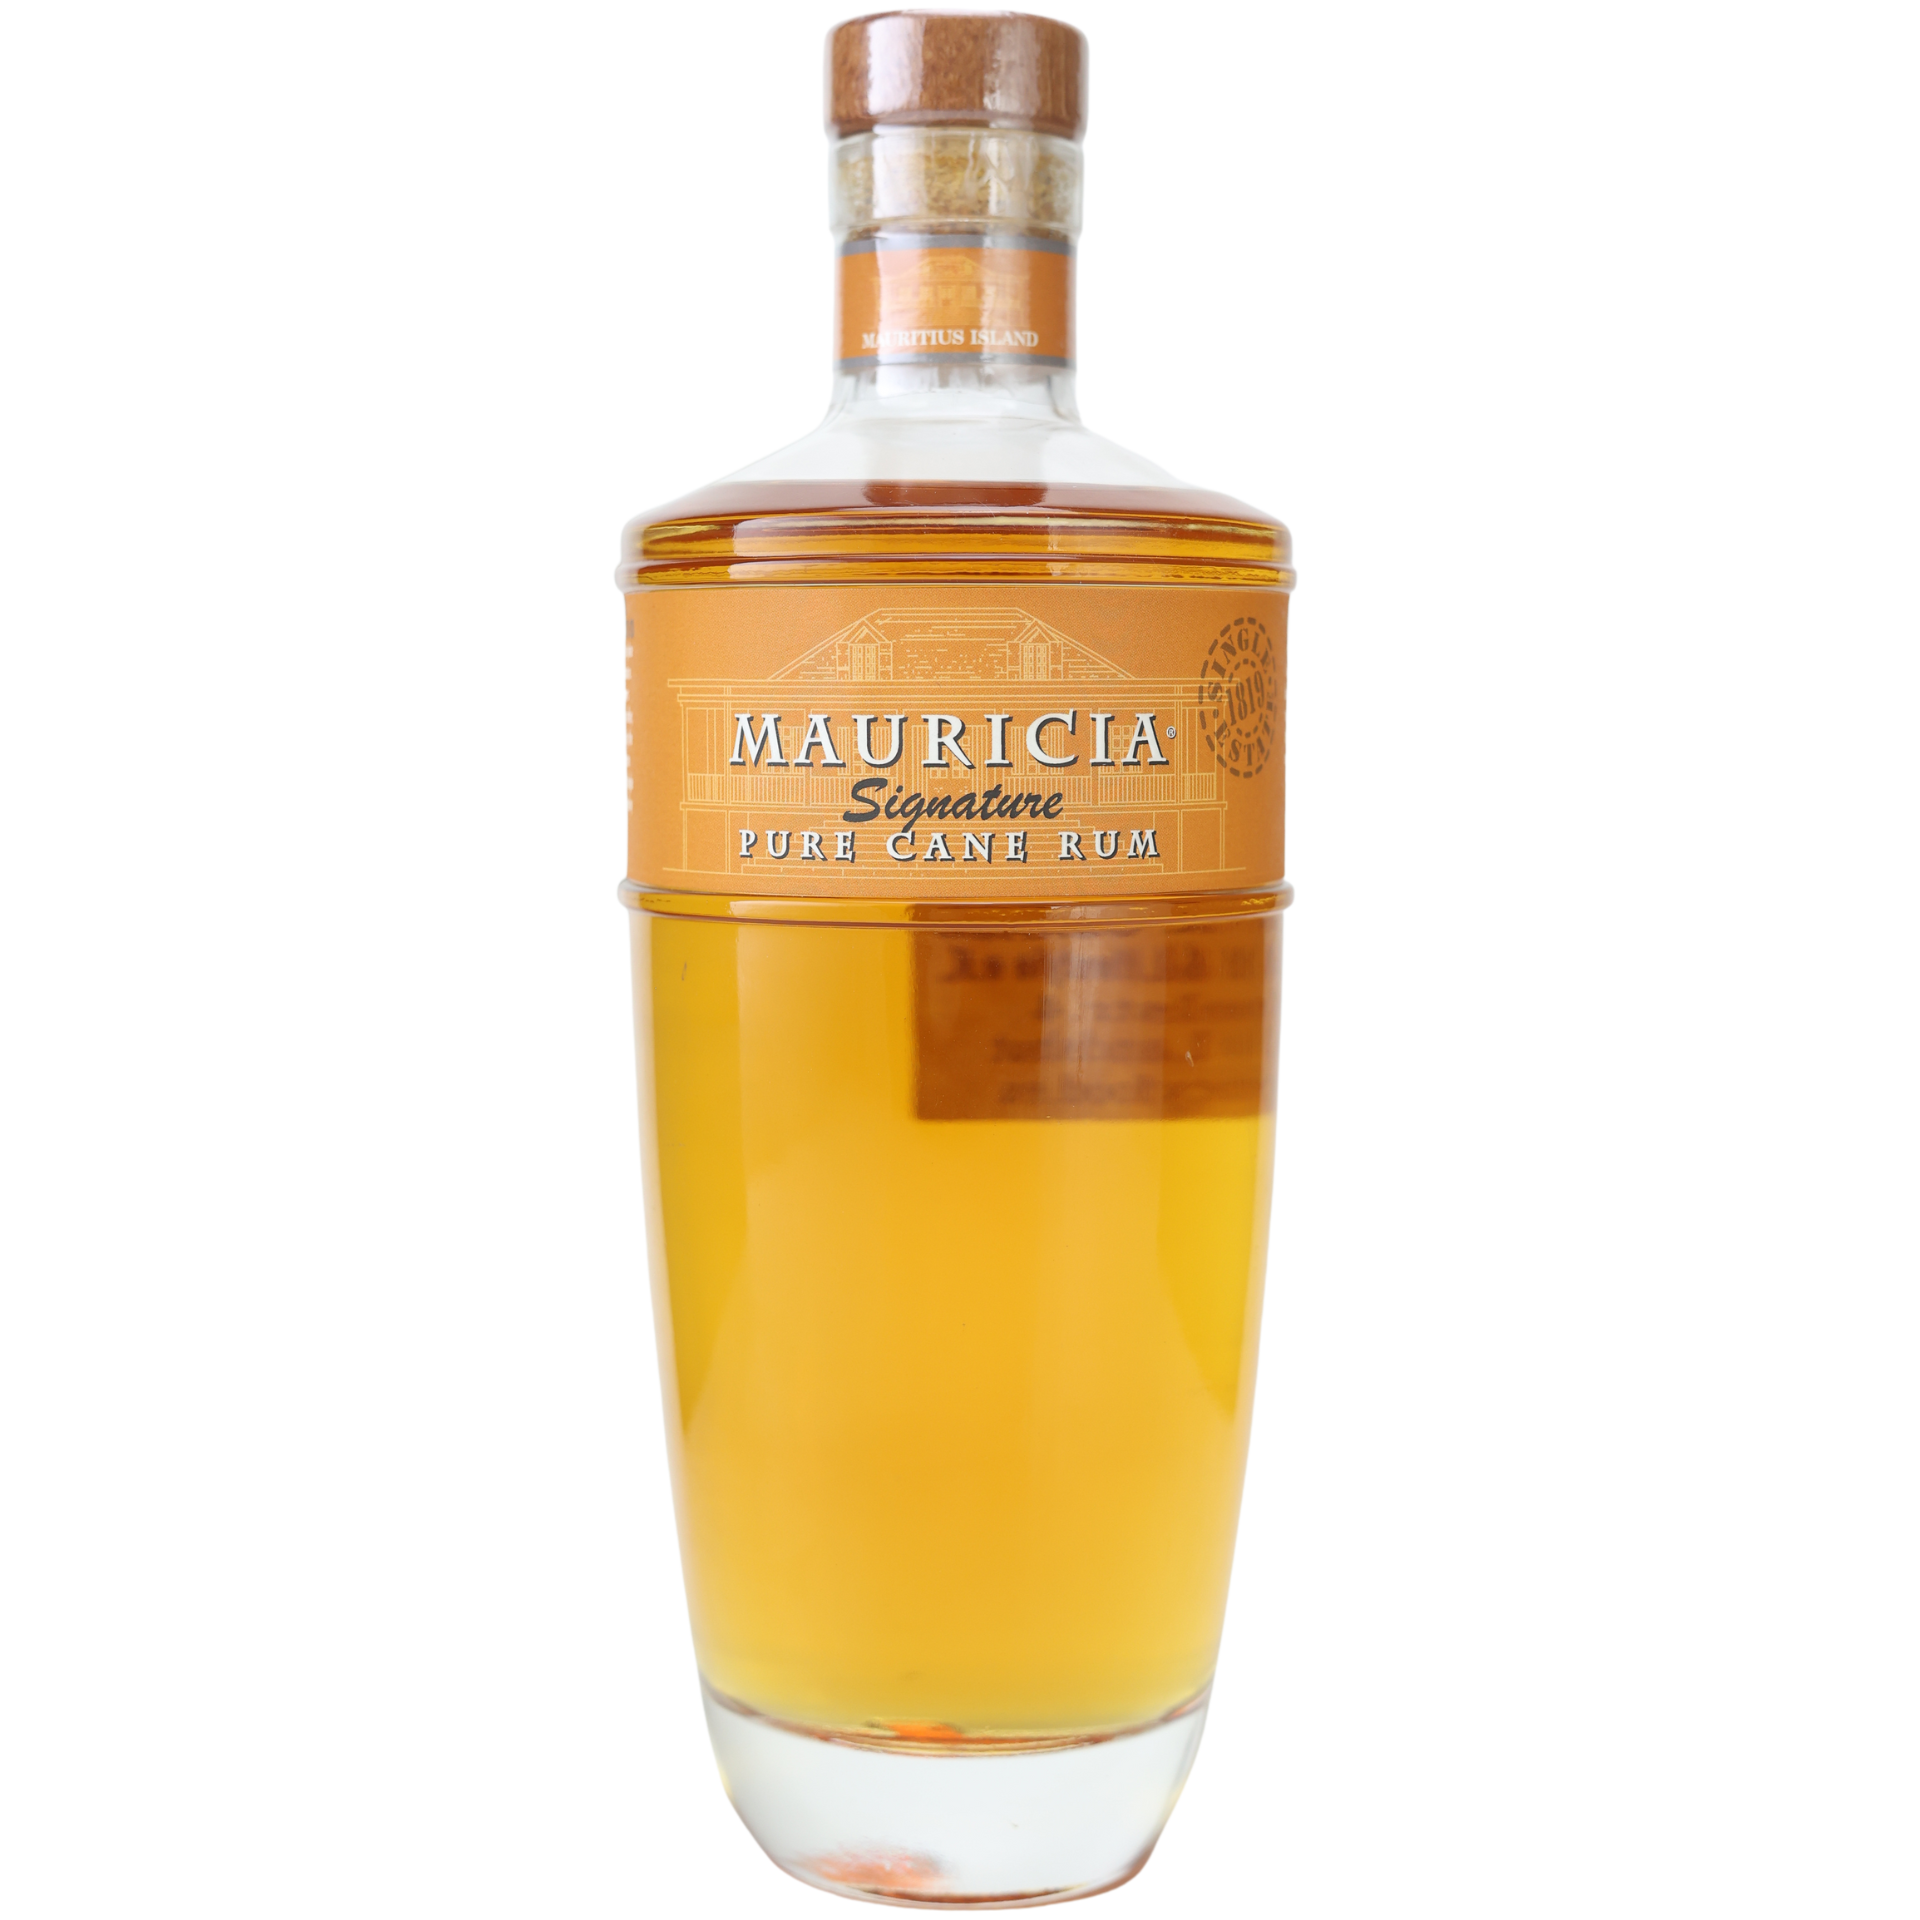 Mauricia Signature Rum 45% 0,7l